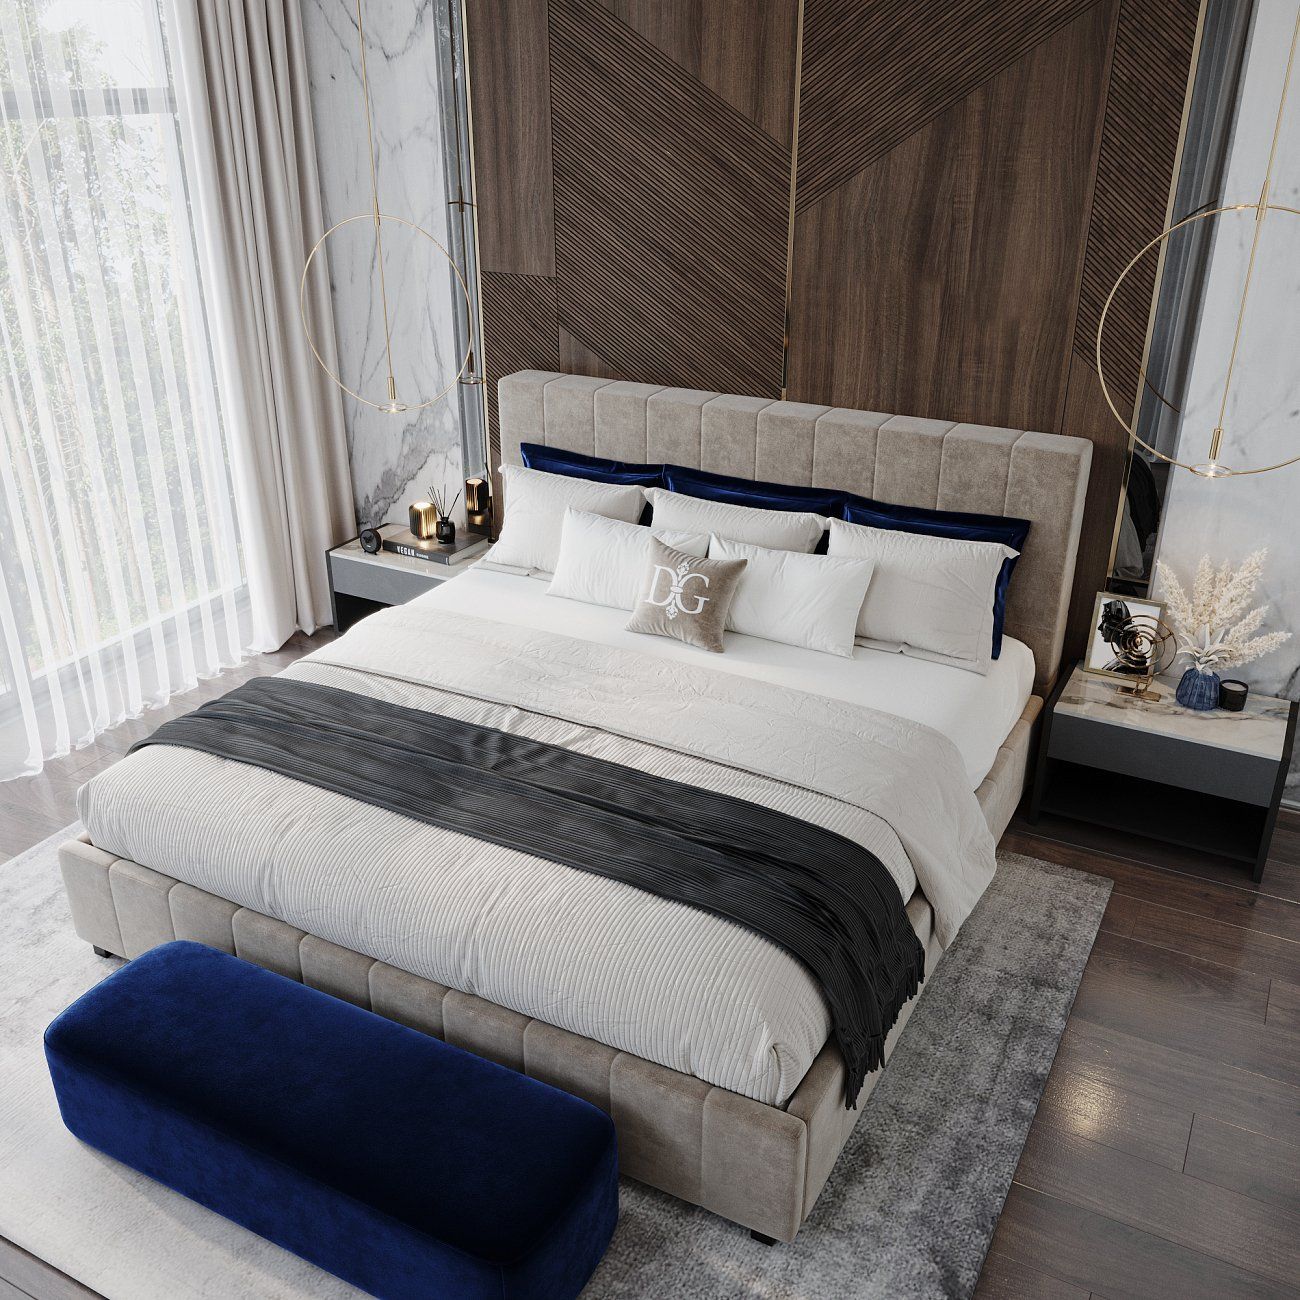 Кровать двуспальная 180х200 см серо-коричневая Shining Modern